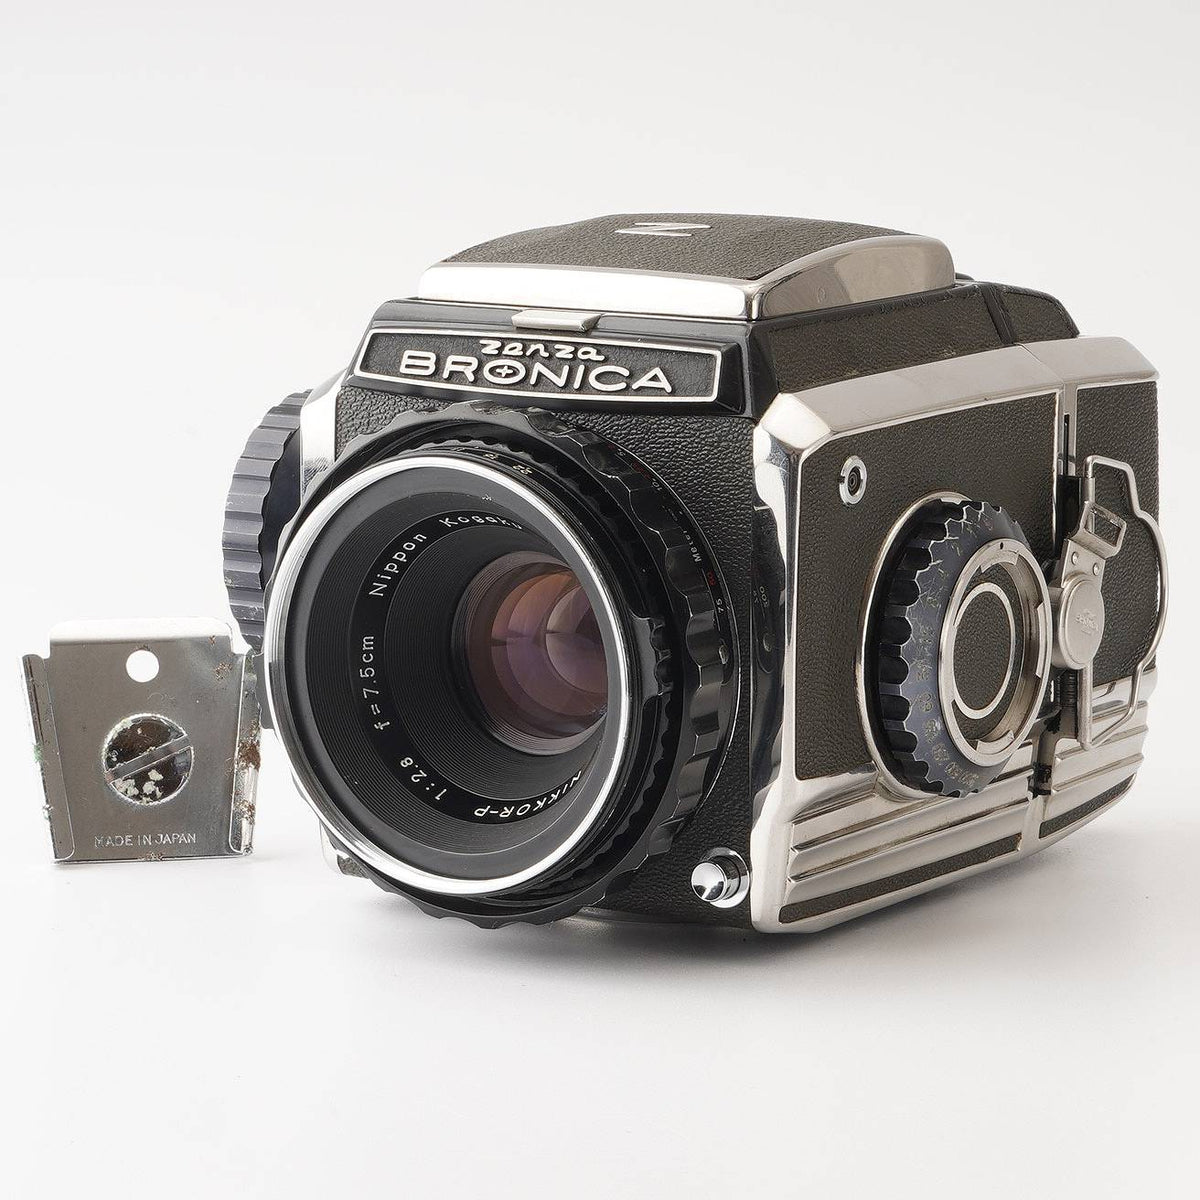 【今季入荷】ゼンザブロニカ BRONICA S2 75mm 50mm 150mm 付き フィルムカメラ